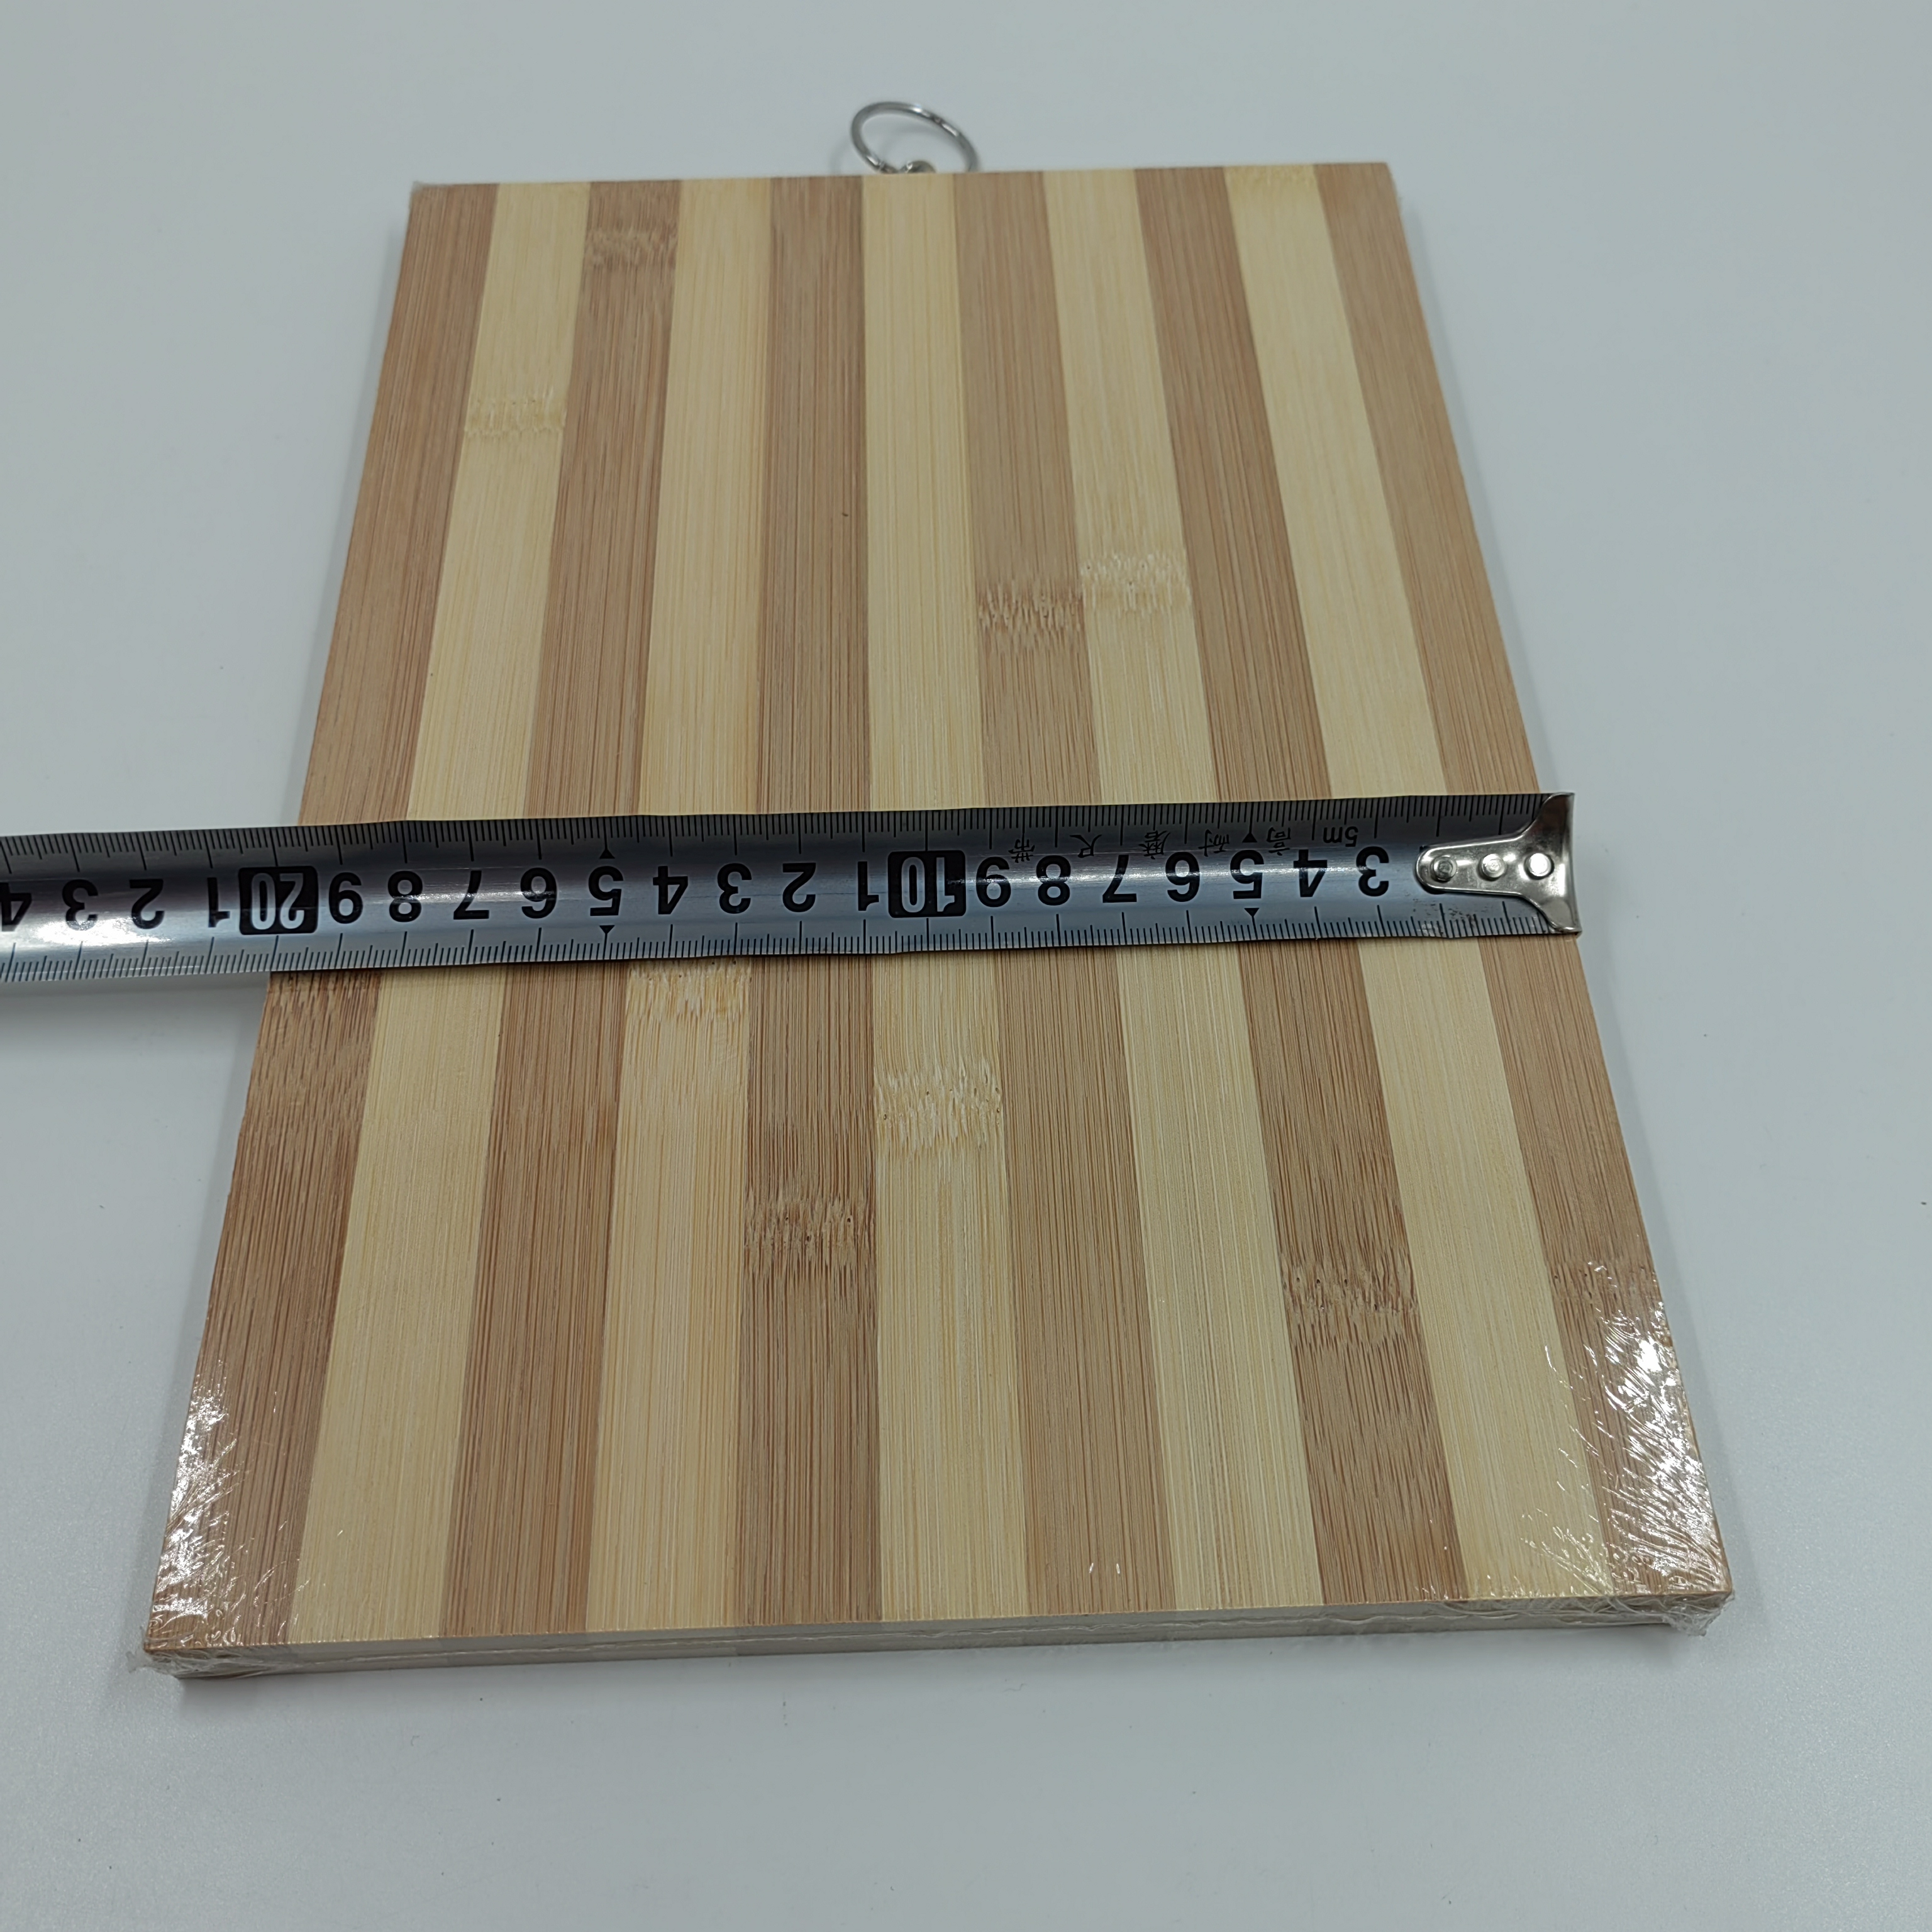 菜板/砧板/竹木菜板/厨房工具/碳化菜板/碳化竹砧板白底实物图